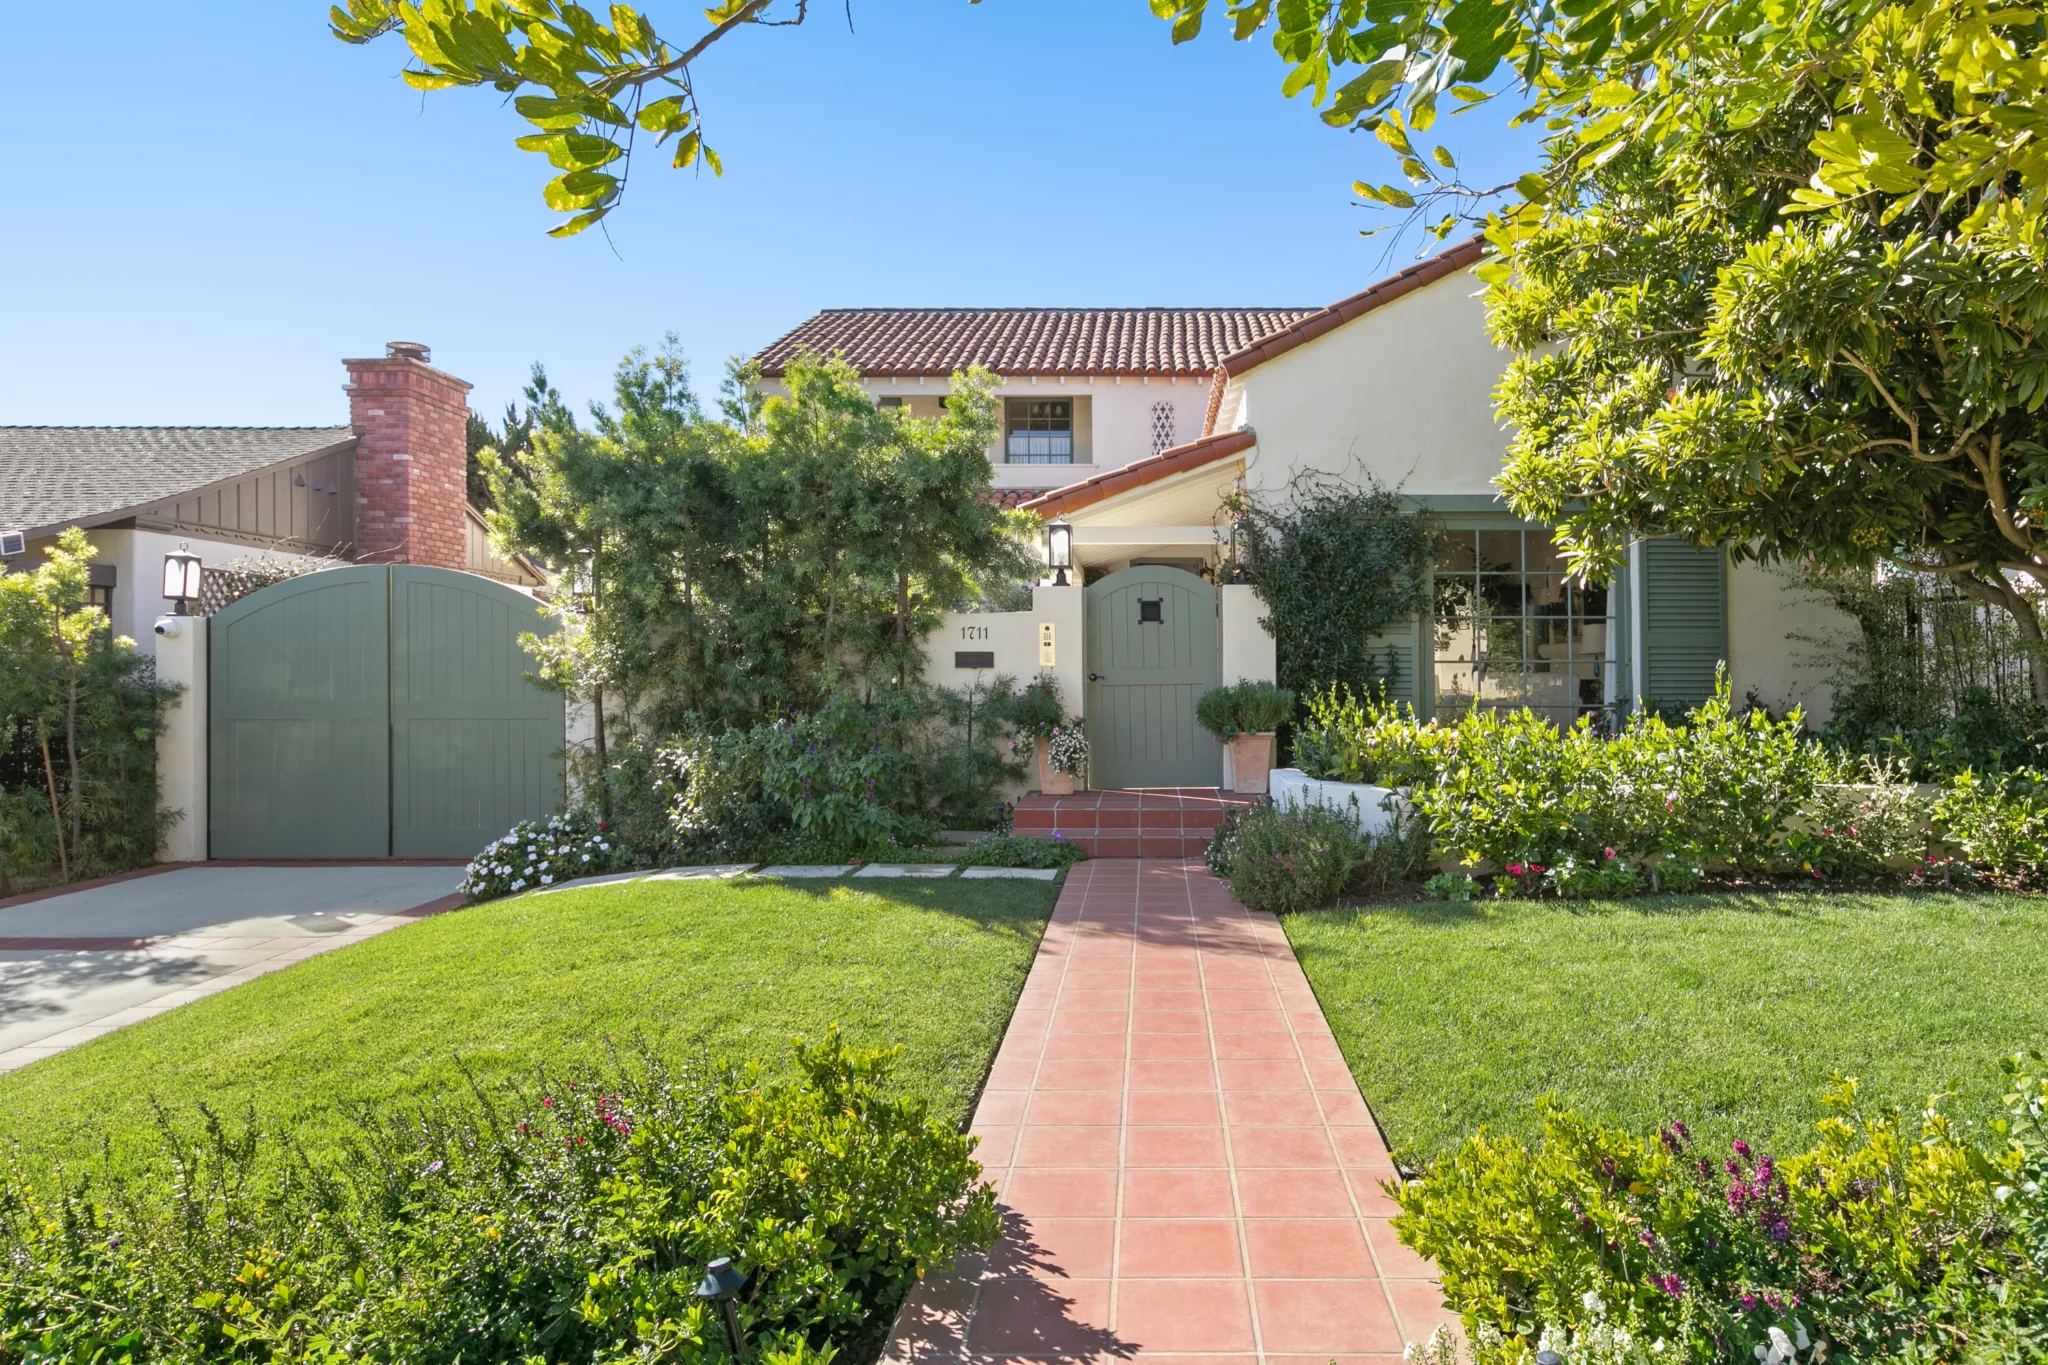 Η Emma Stone πουλάει το σπίτι της στο Λος Αντζελες για 3,9 εκατ. δολάρια